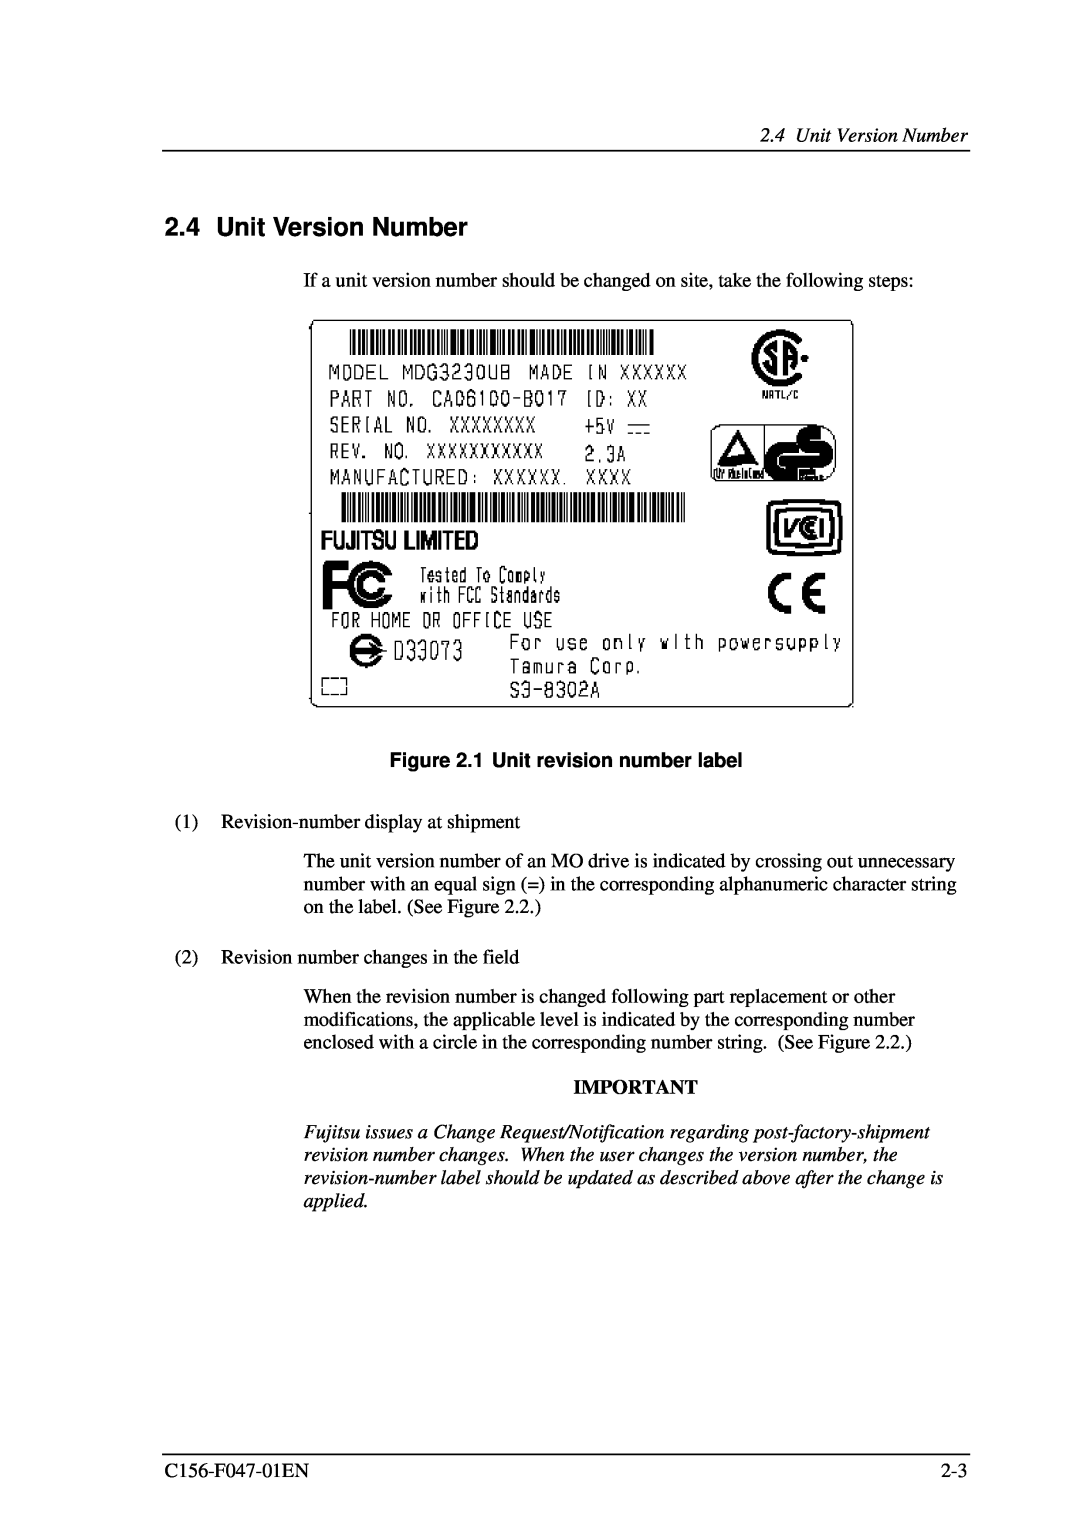 Fujitsu MDG3230UB manual Unit Version Number, 1 Unit revision number label 